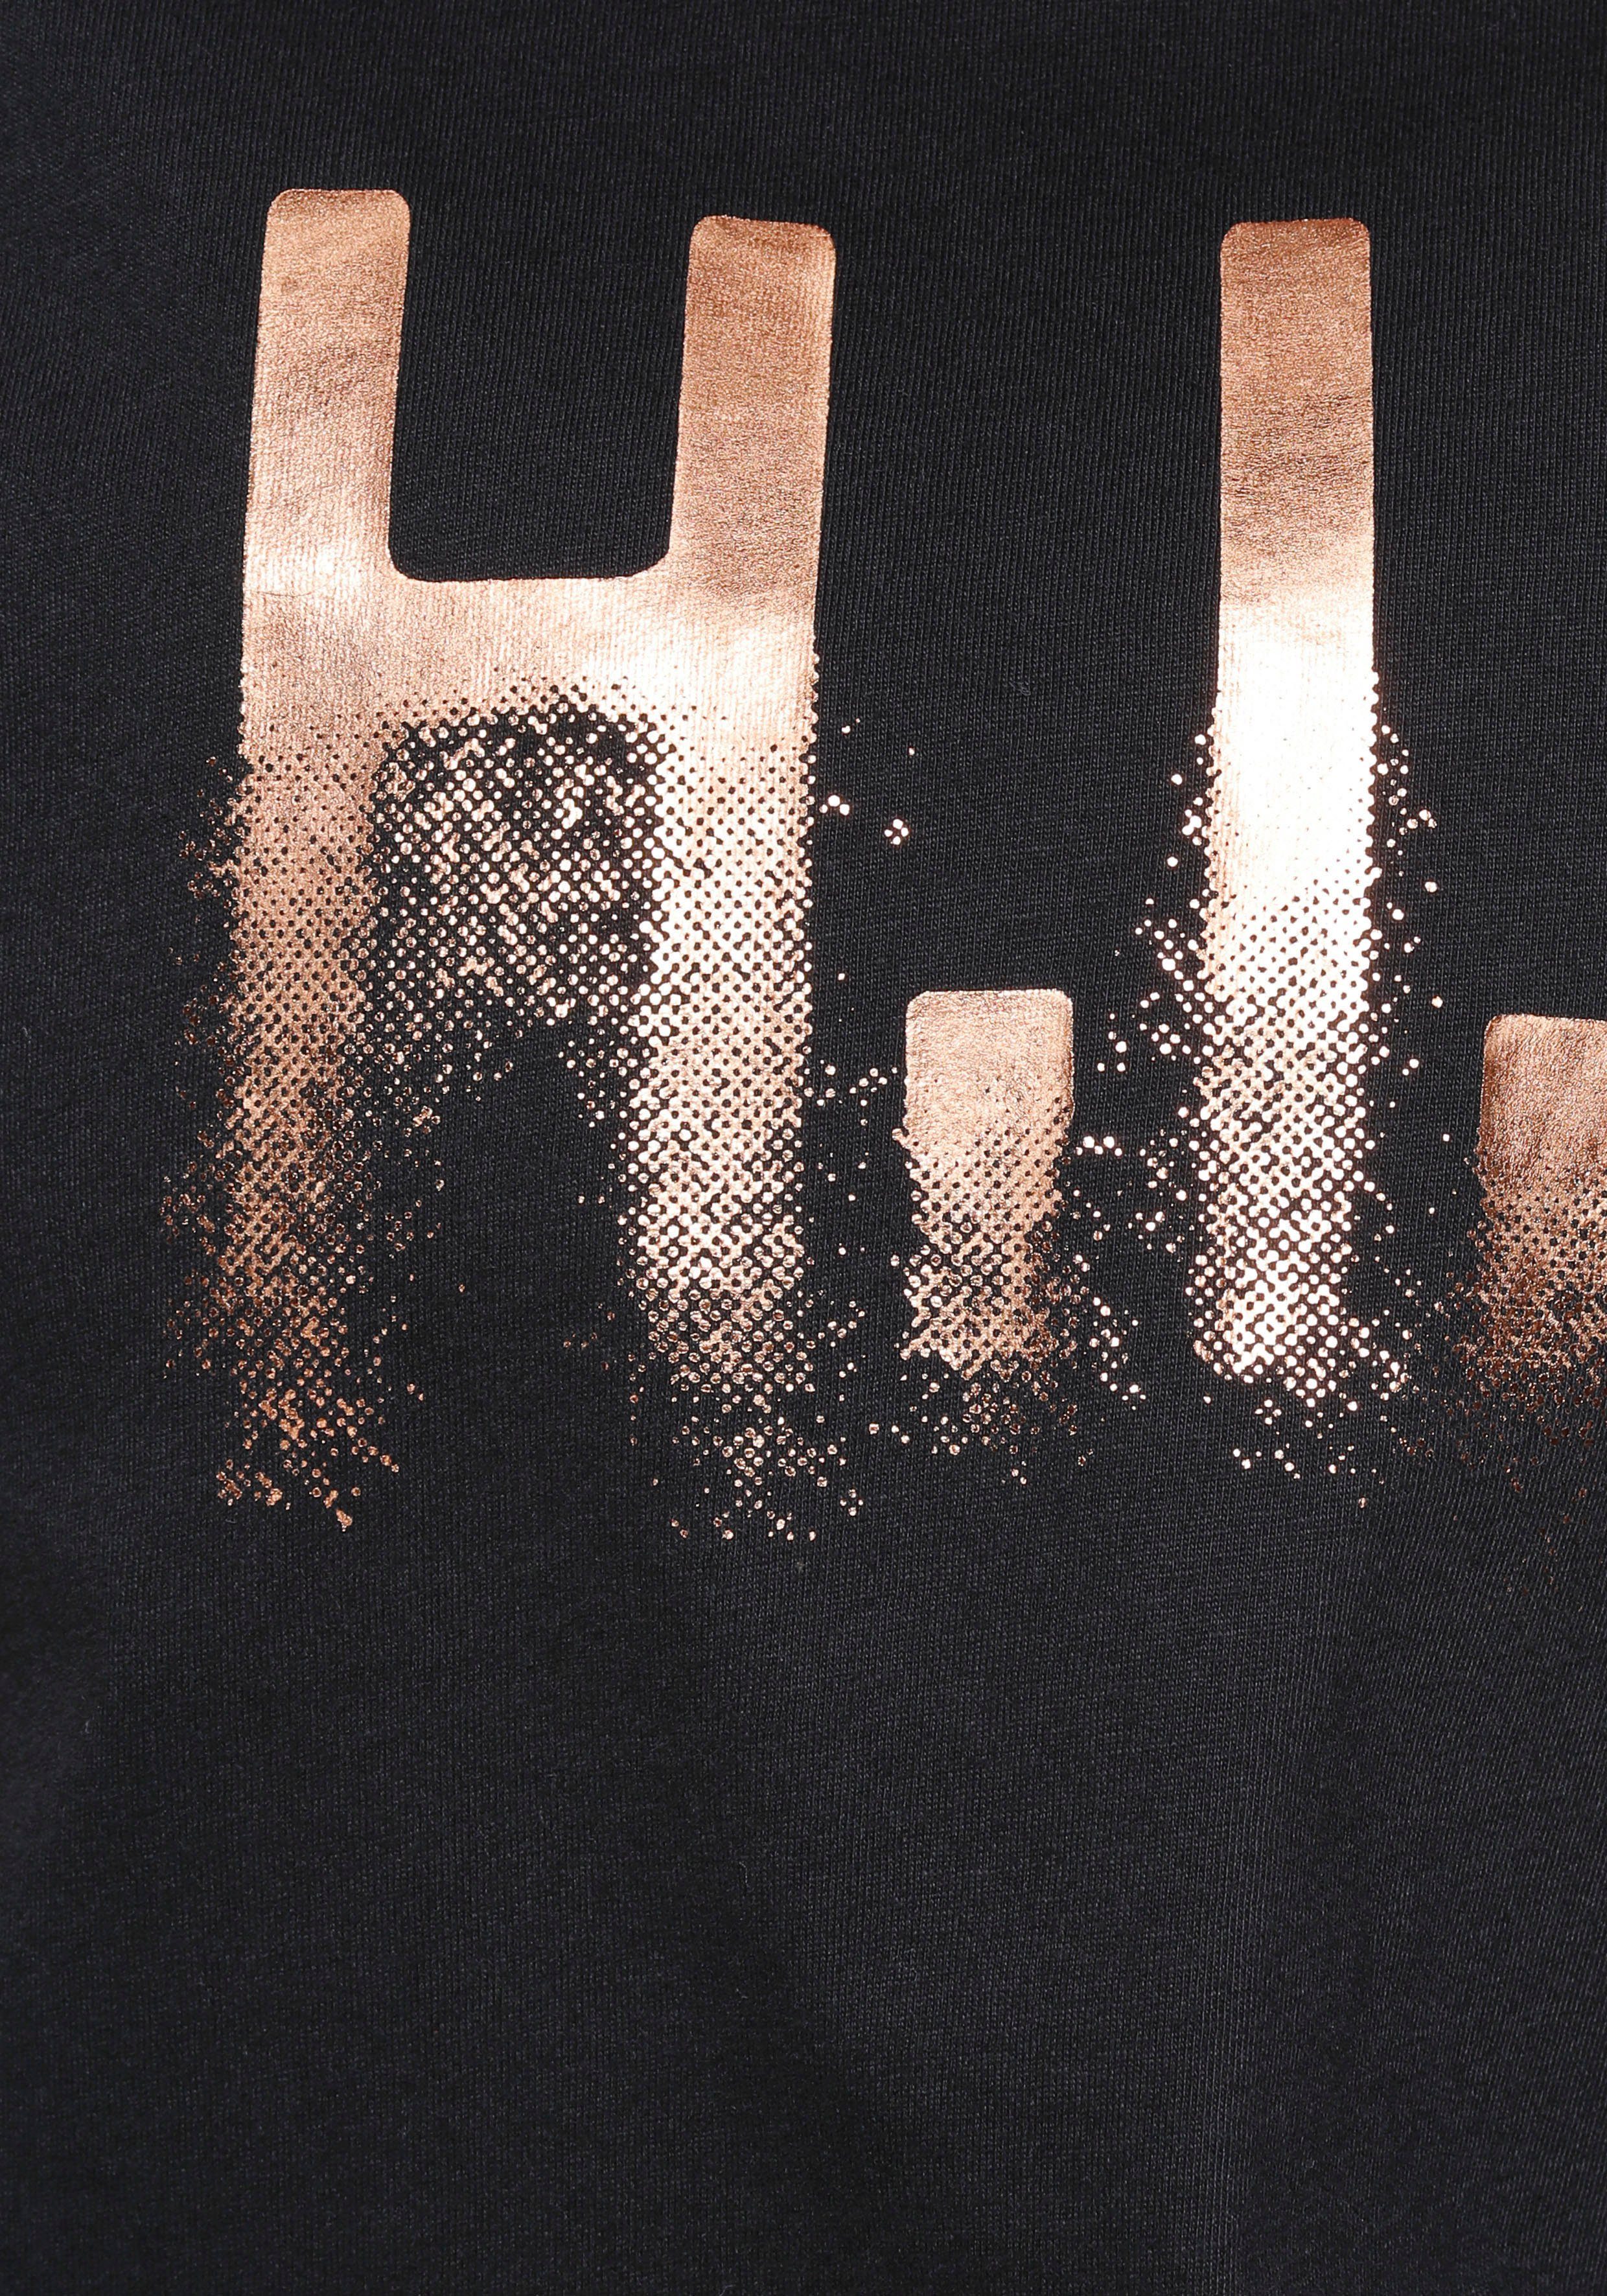 H.I.S T-Shirt glänzenden Druck mit (2er-Pack)